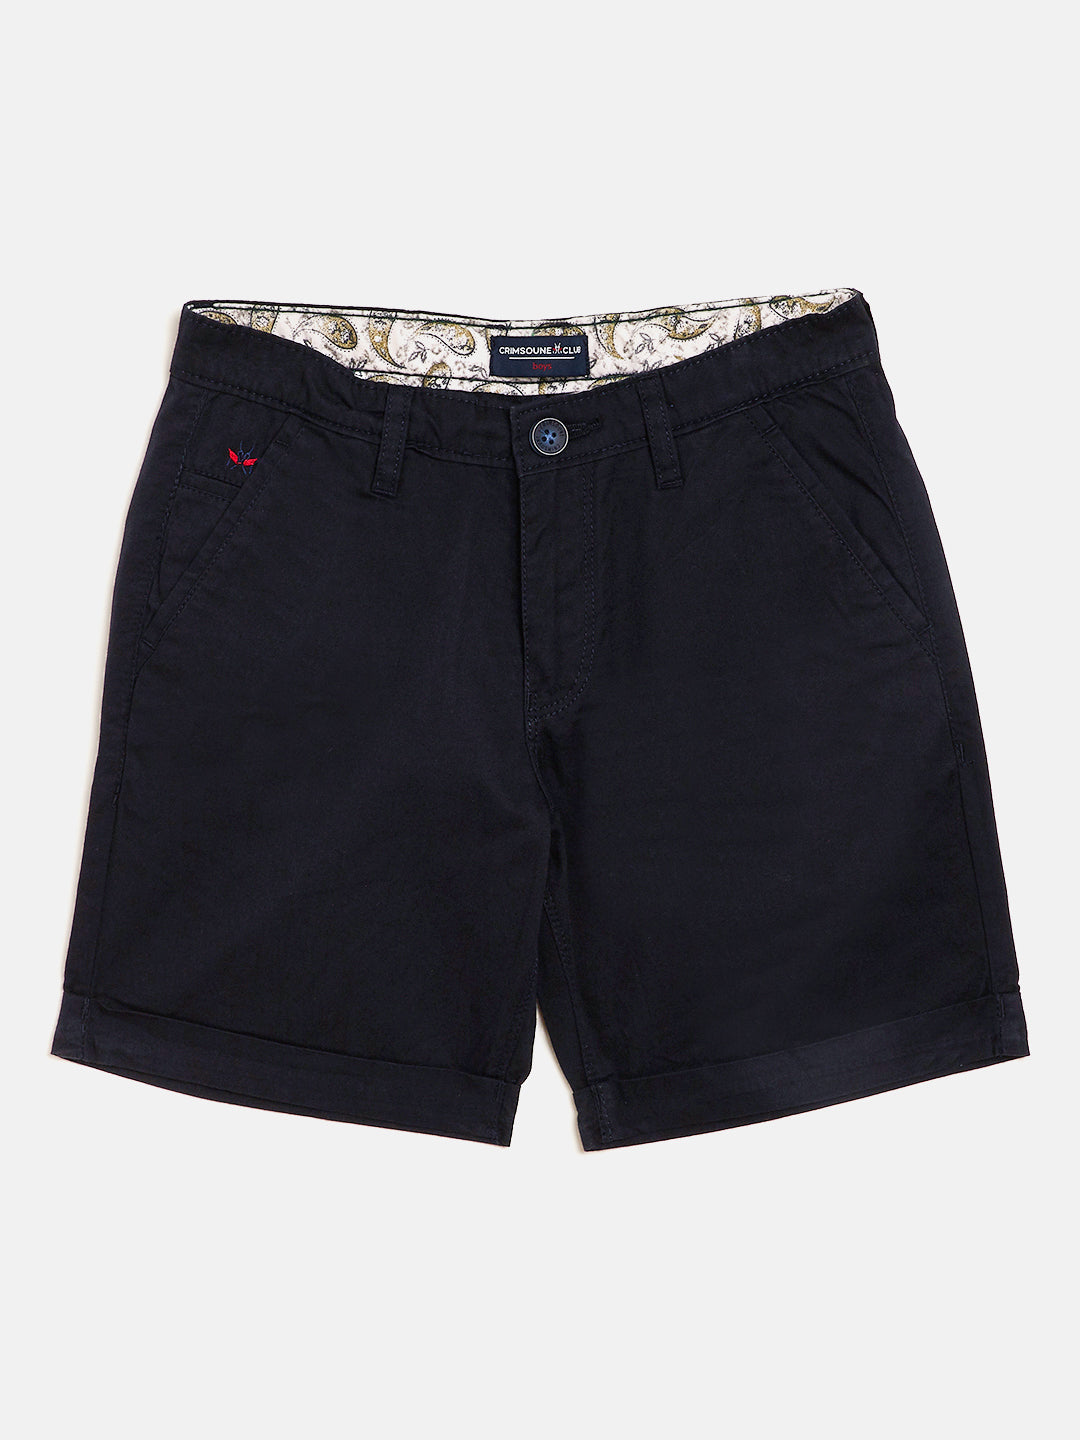 Navy Blue Slim Fit Shorts - Boys Shorts